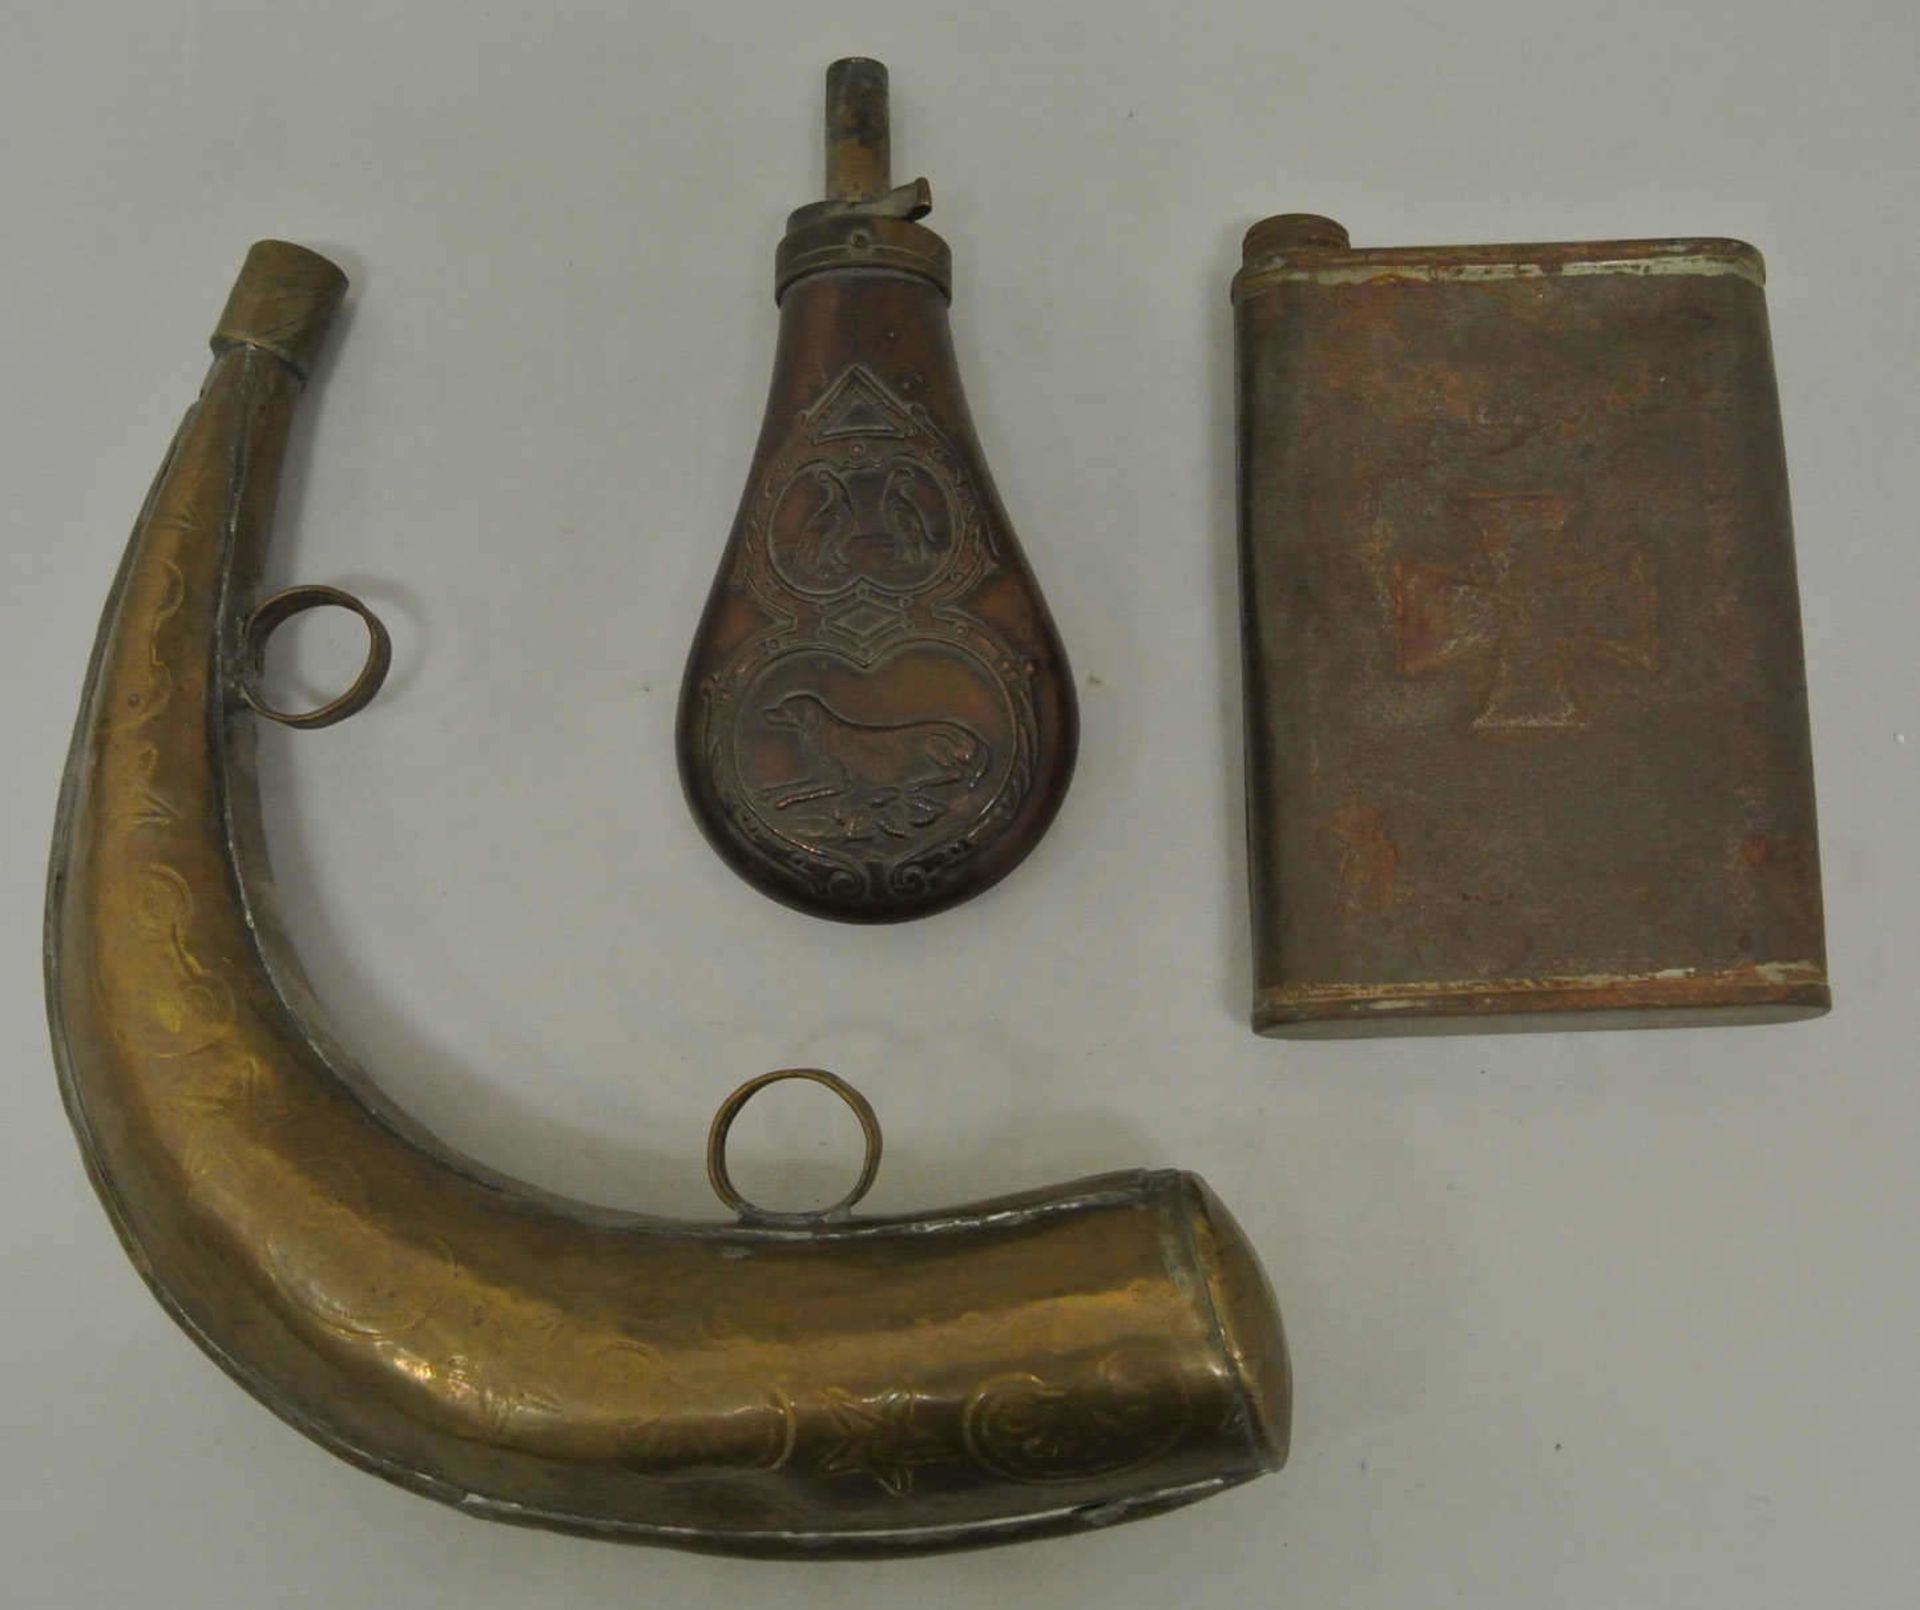 2 alte Pulverflaschen aus Kupfer, dabei 1x verziert mit Jagdmotiven, sowie 1 alte Trinkflasche aus